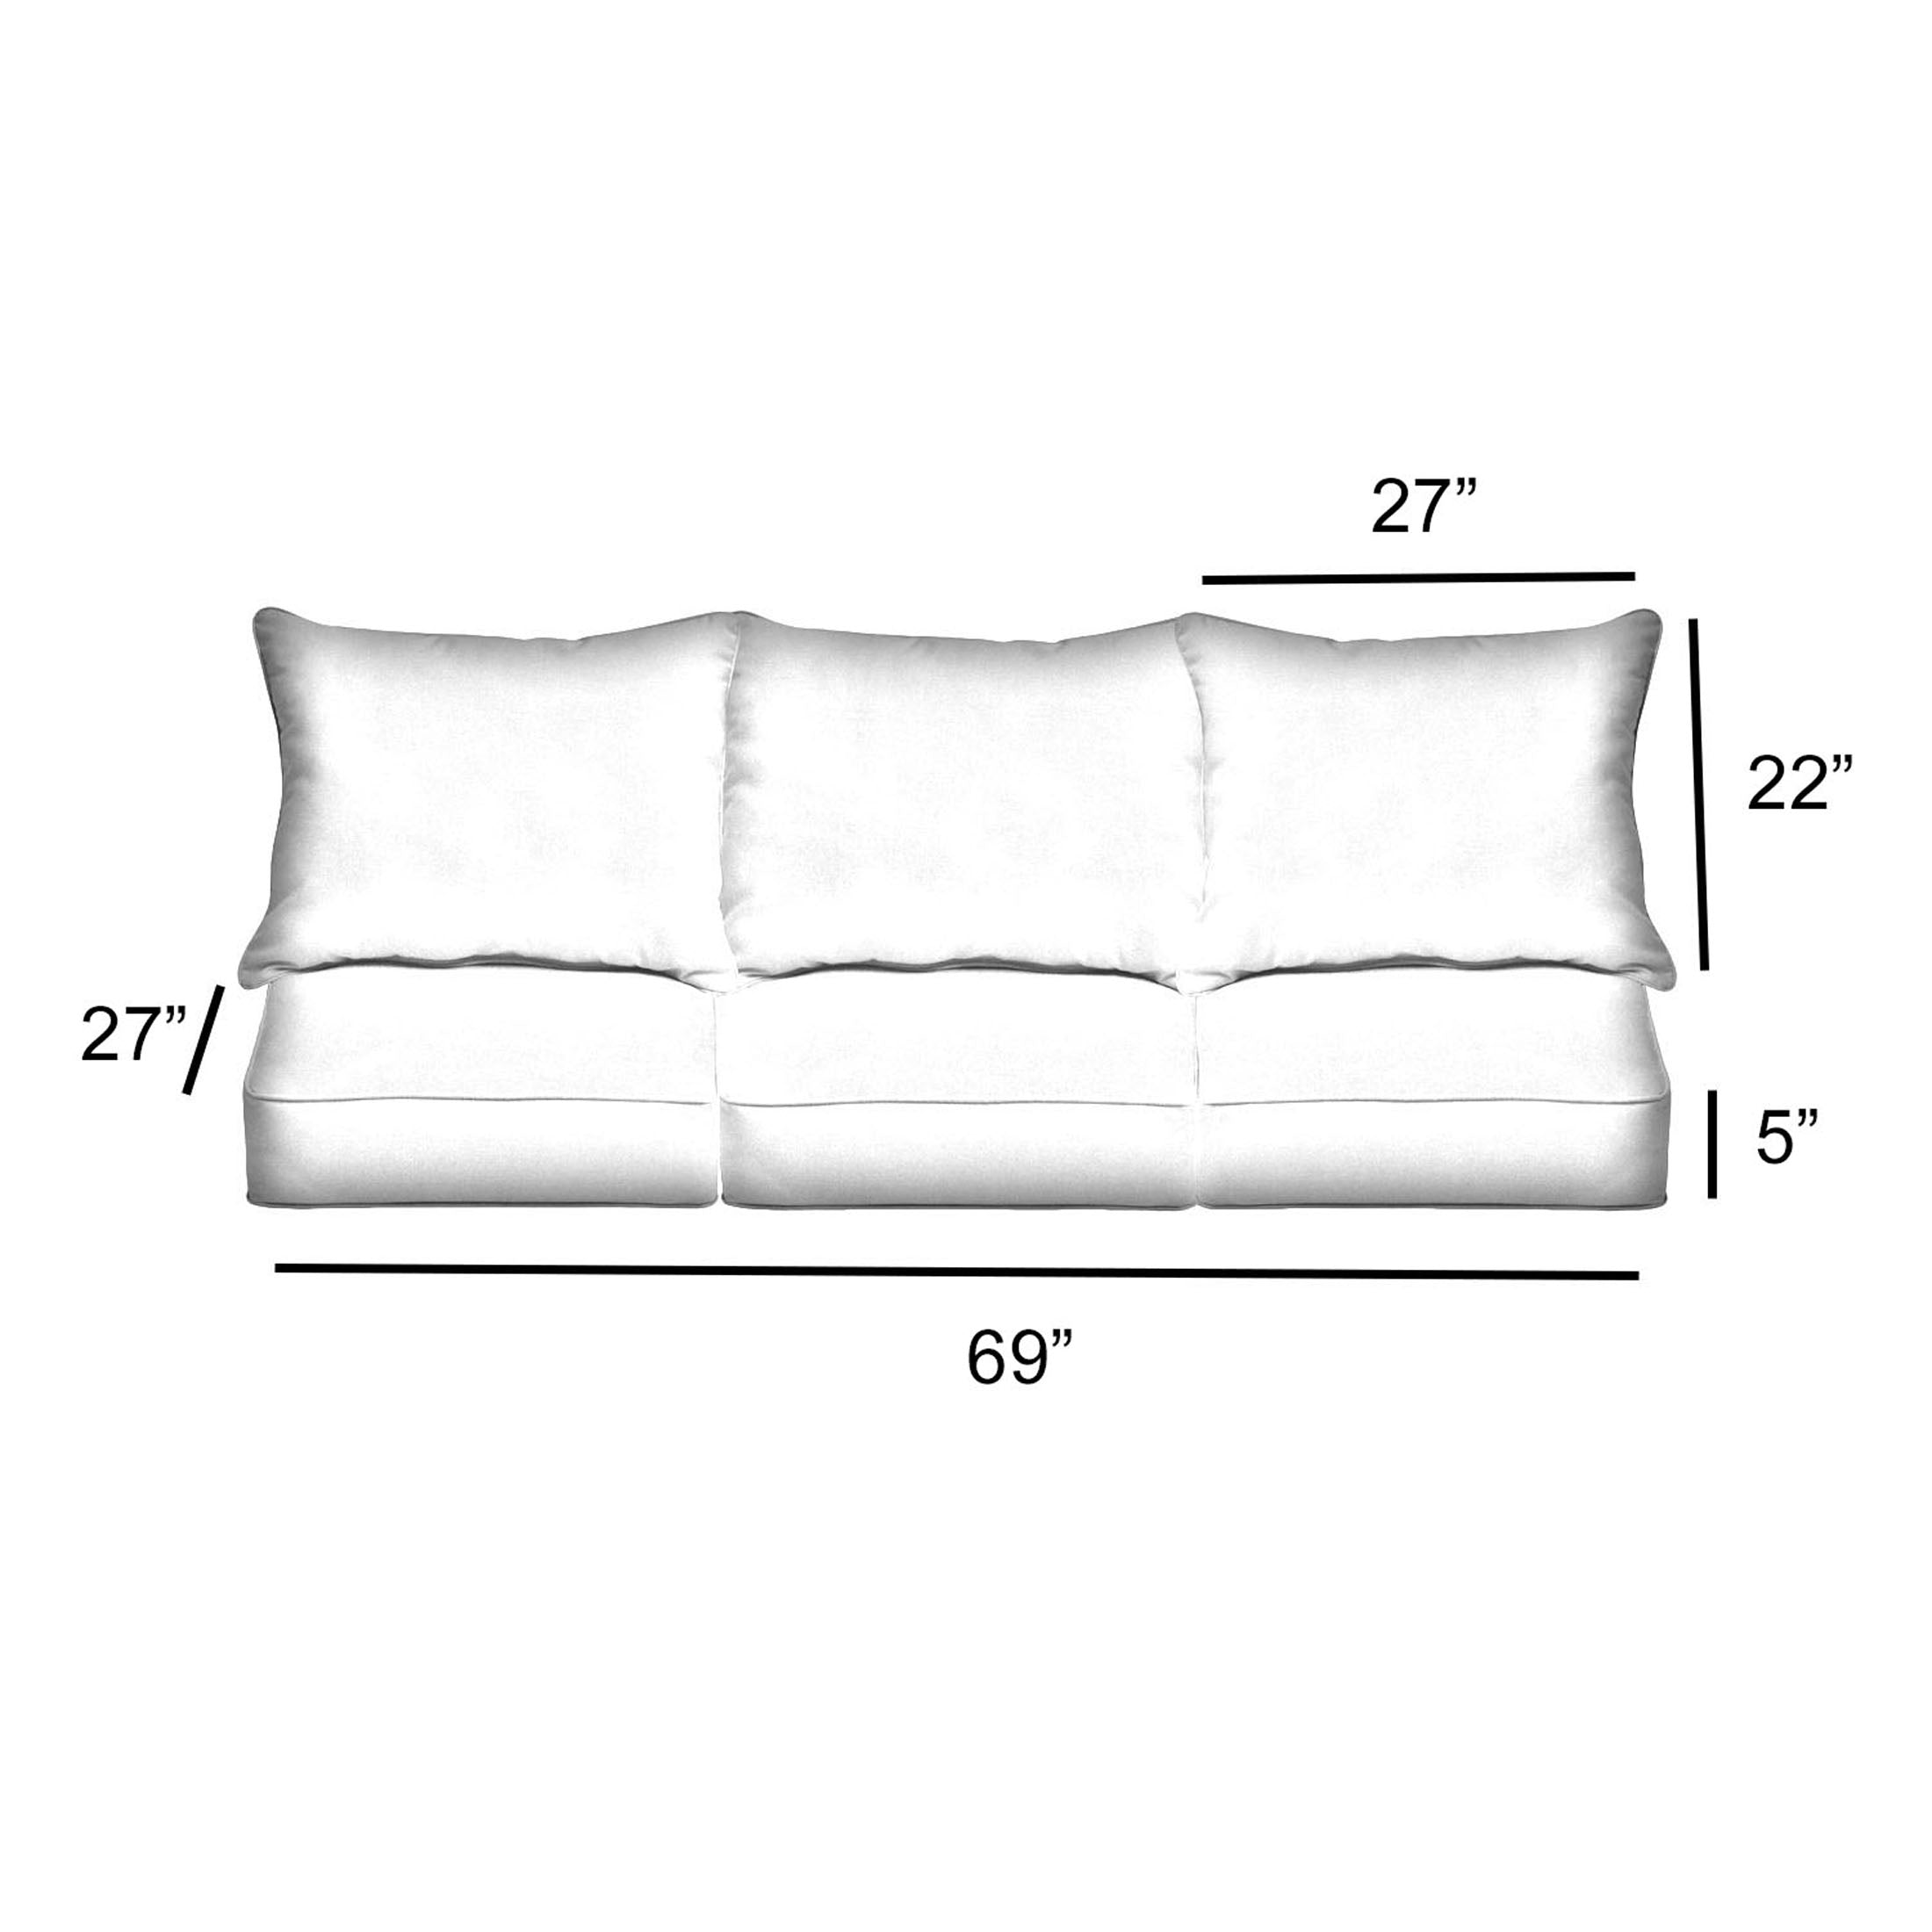 Sunbrella Rectangle Outdoor Deep Seating Sofa Pillow and Cushion Set